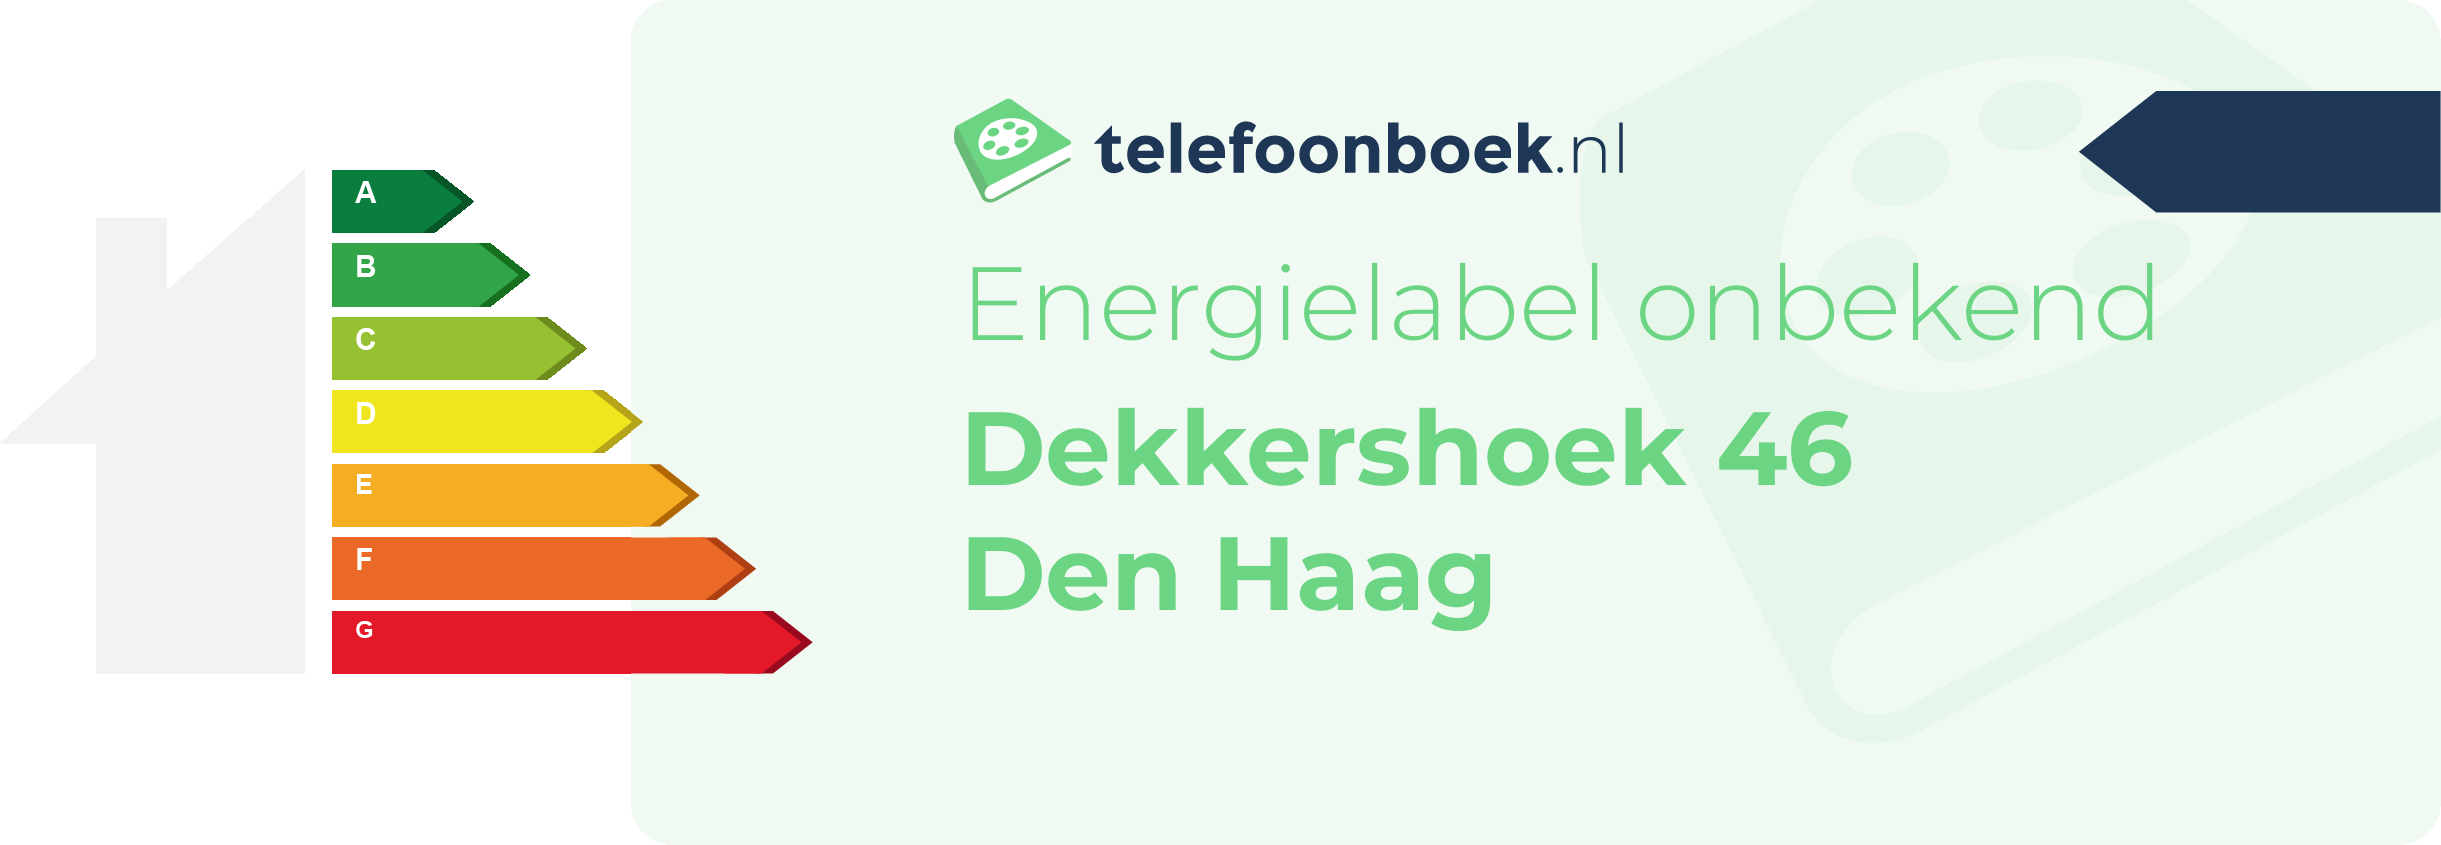 Energielabel Dekkershoek 46 Den Haag